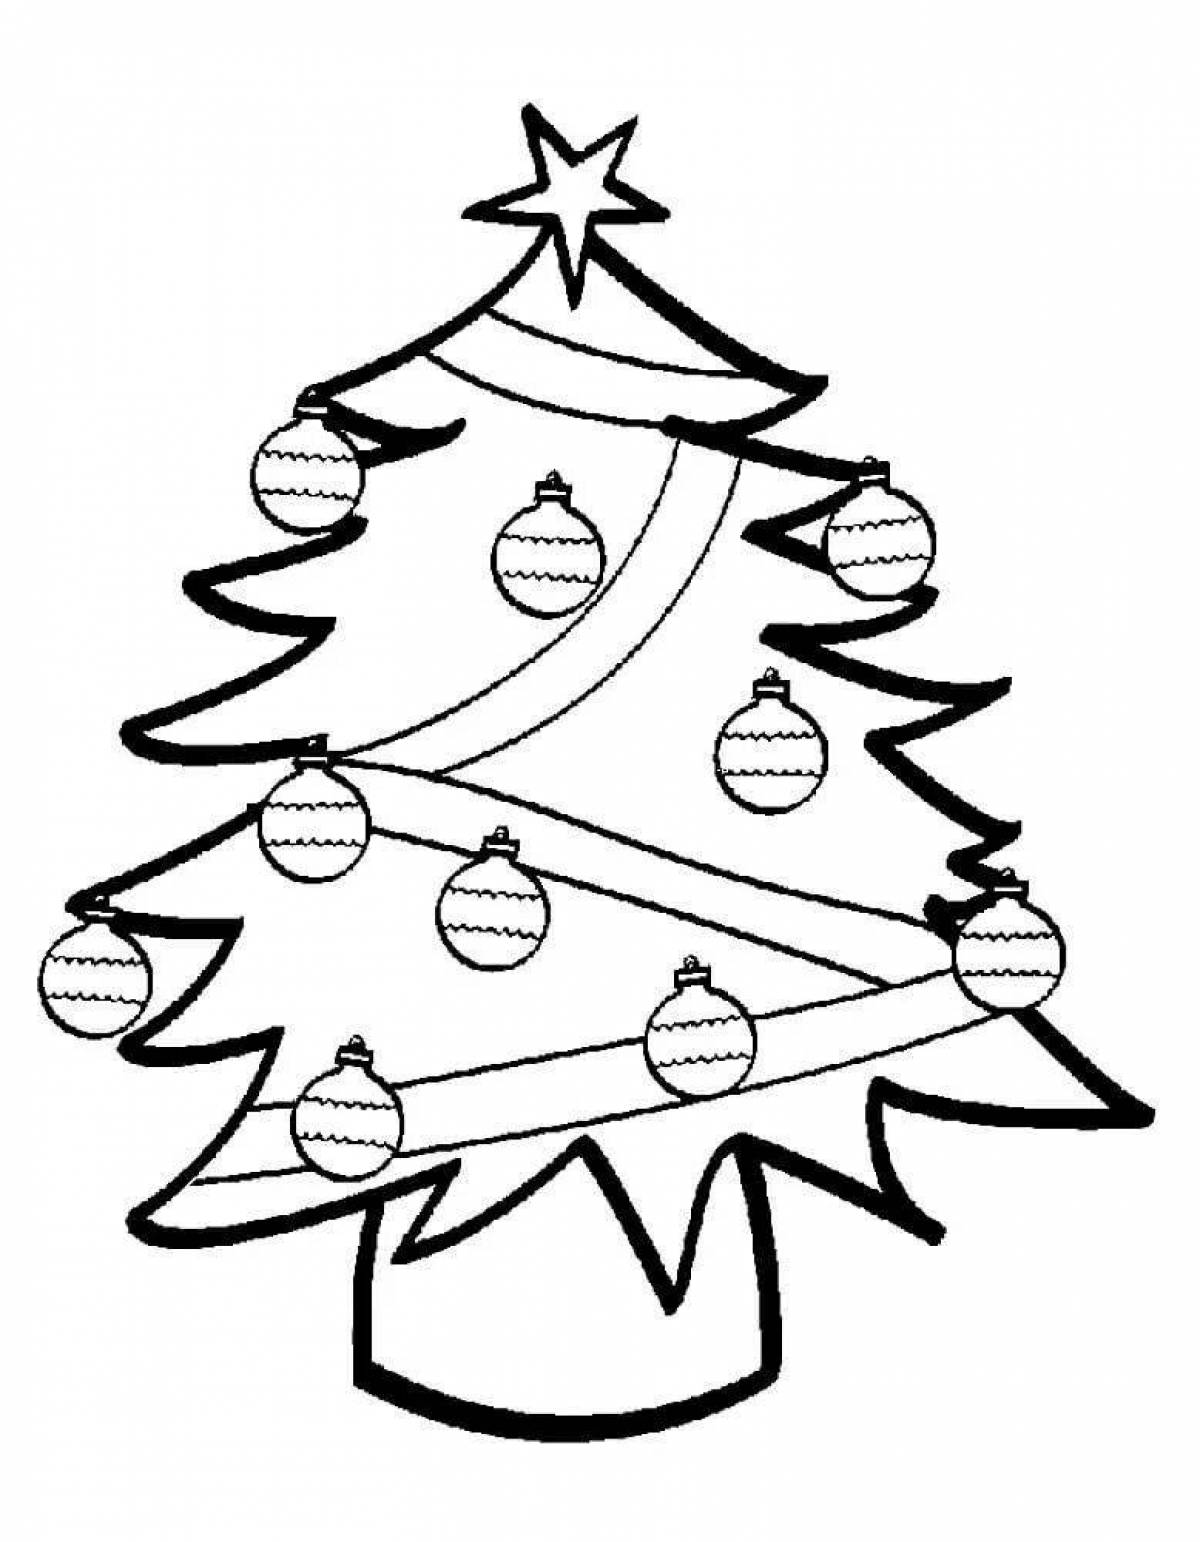 Christmas tree with balls #1